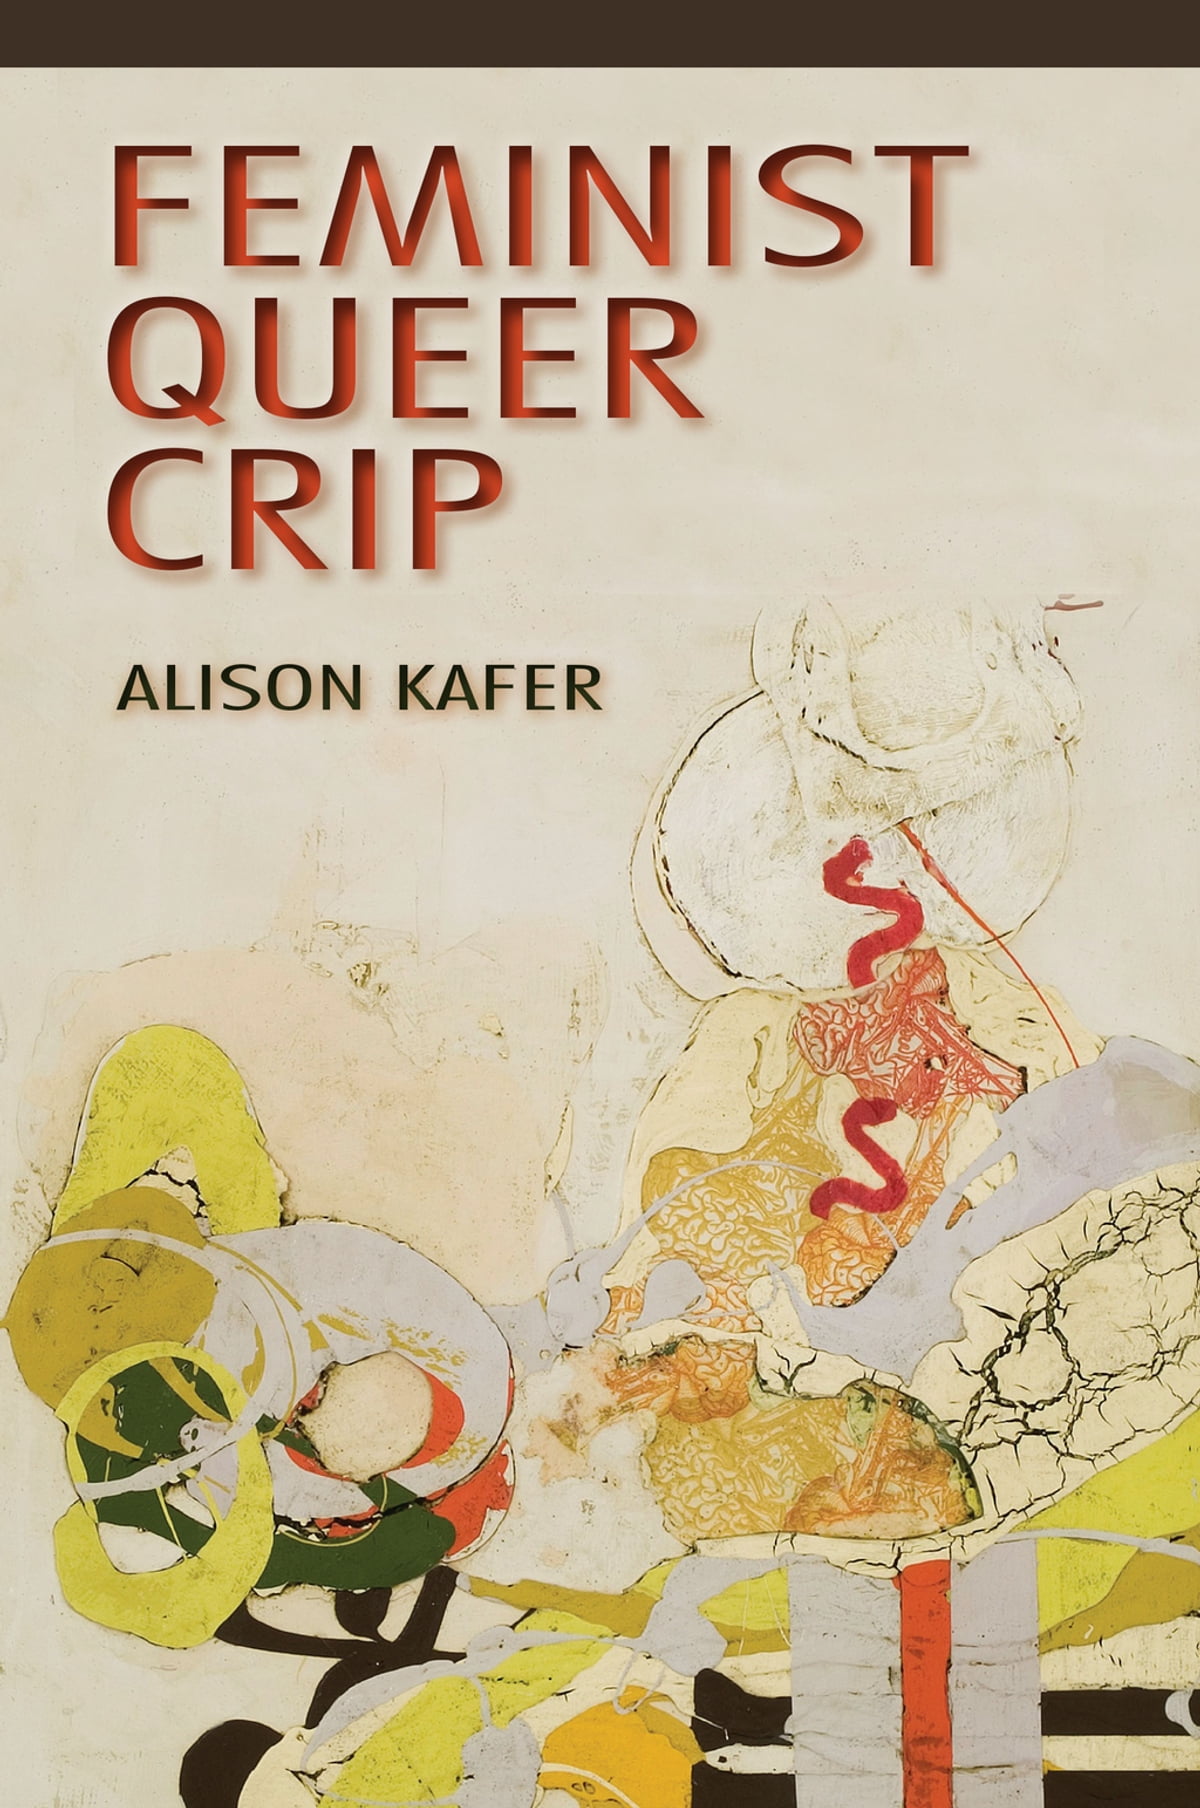 Feminist, Queer, Crip (2013, Indiana University Press)